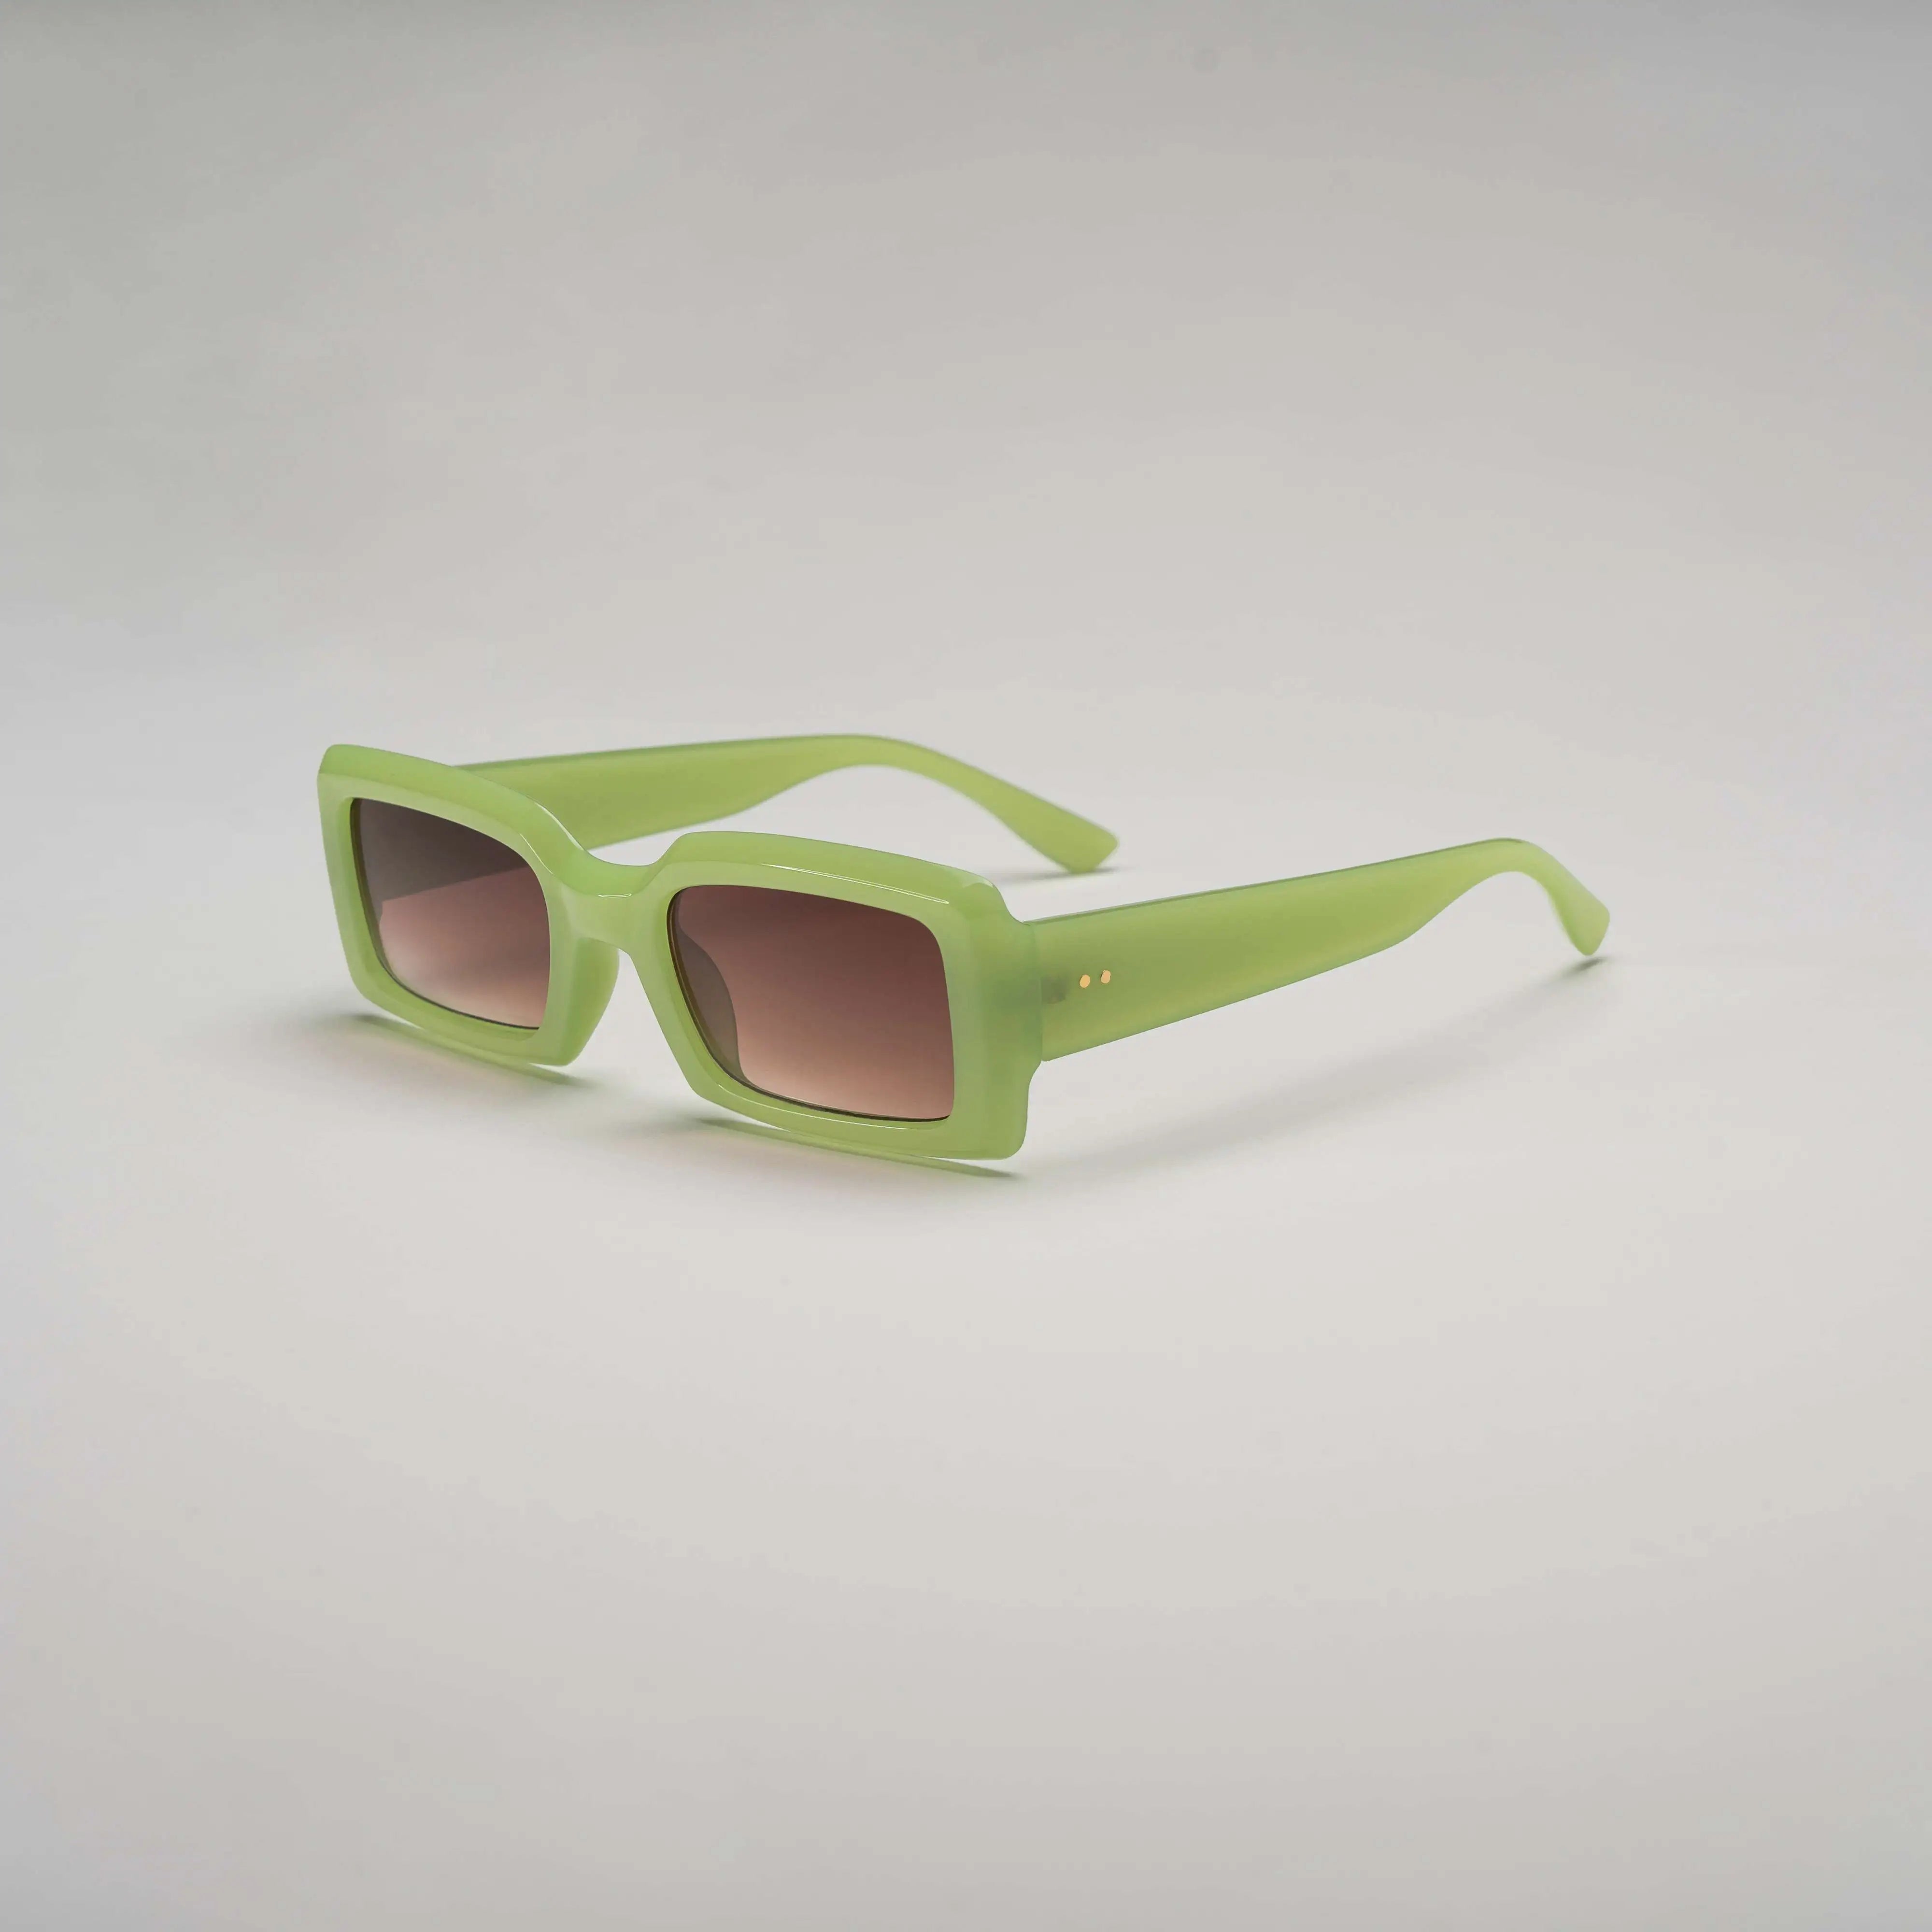 'SYRE' Retro Square Sunglasses in Green & Peach